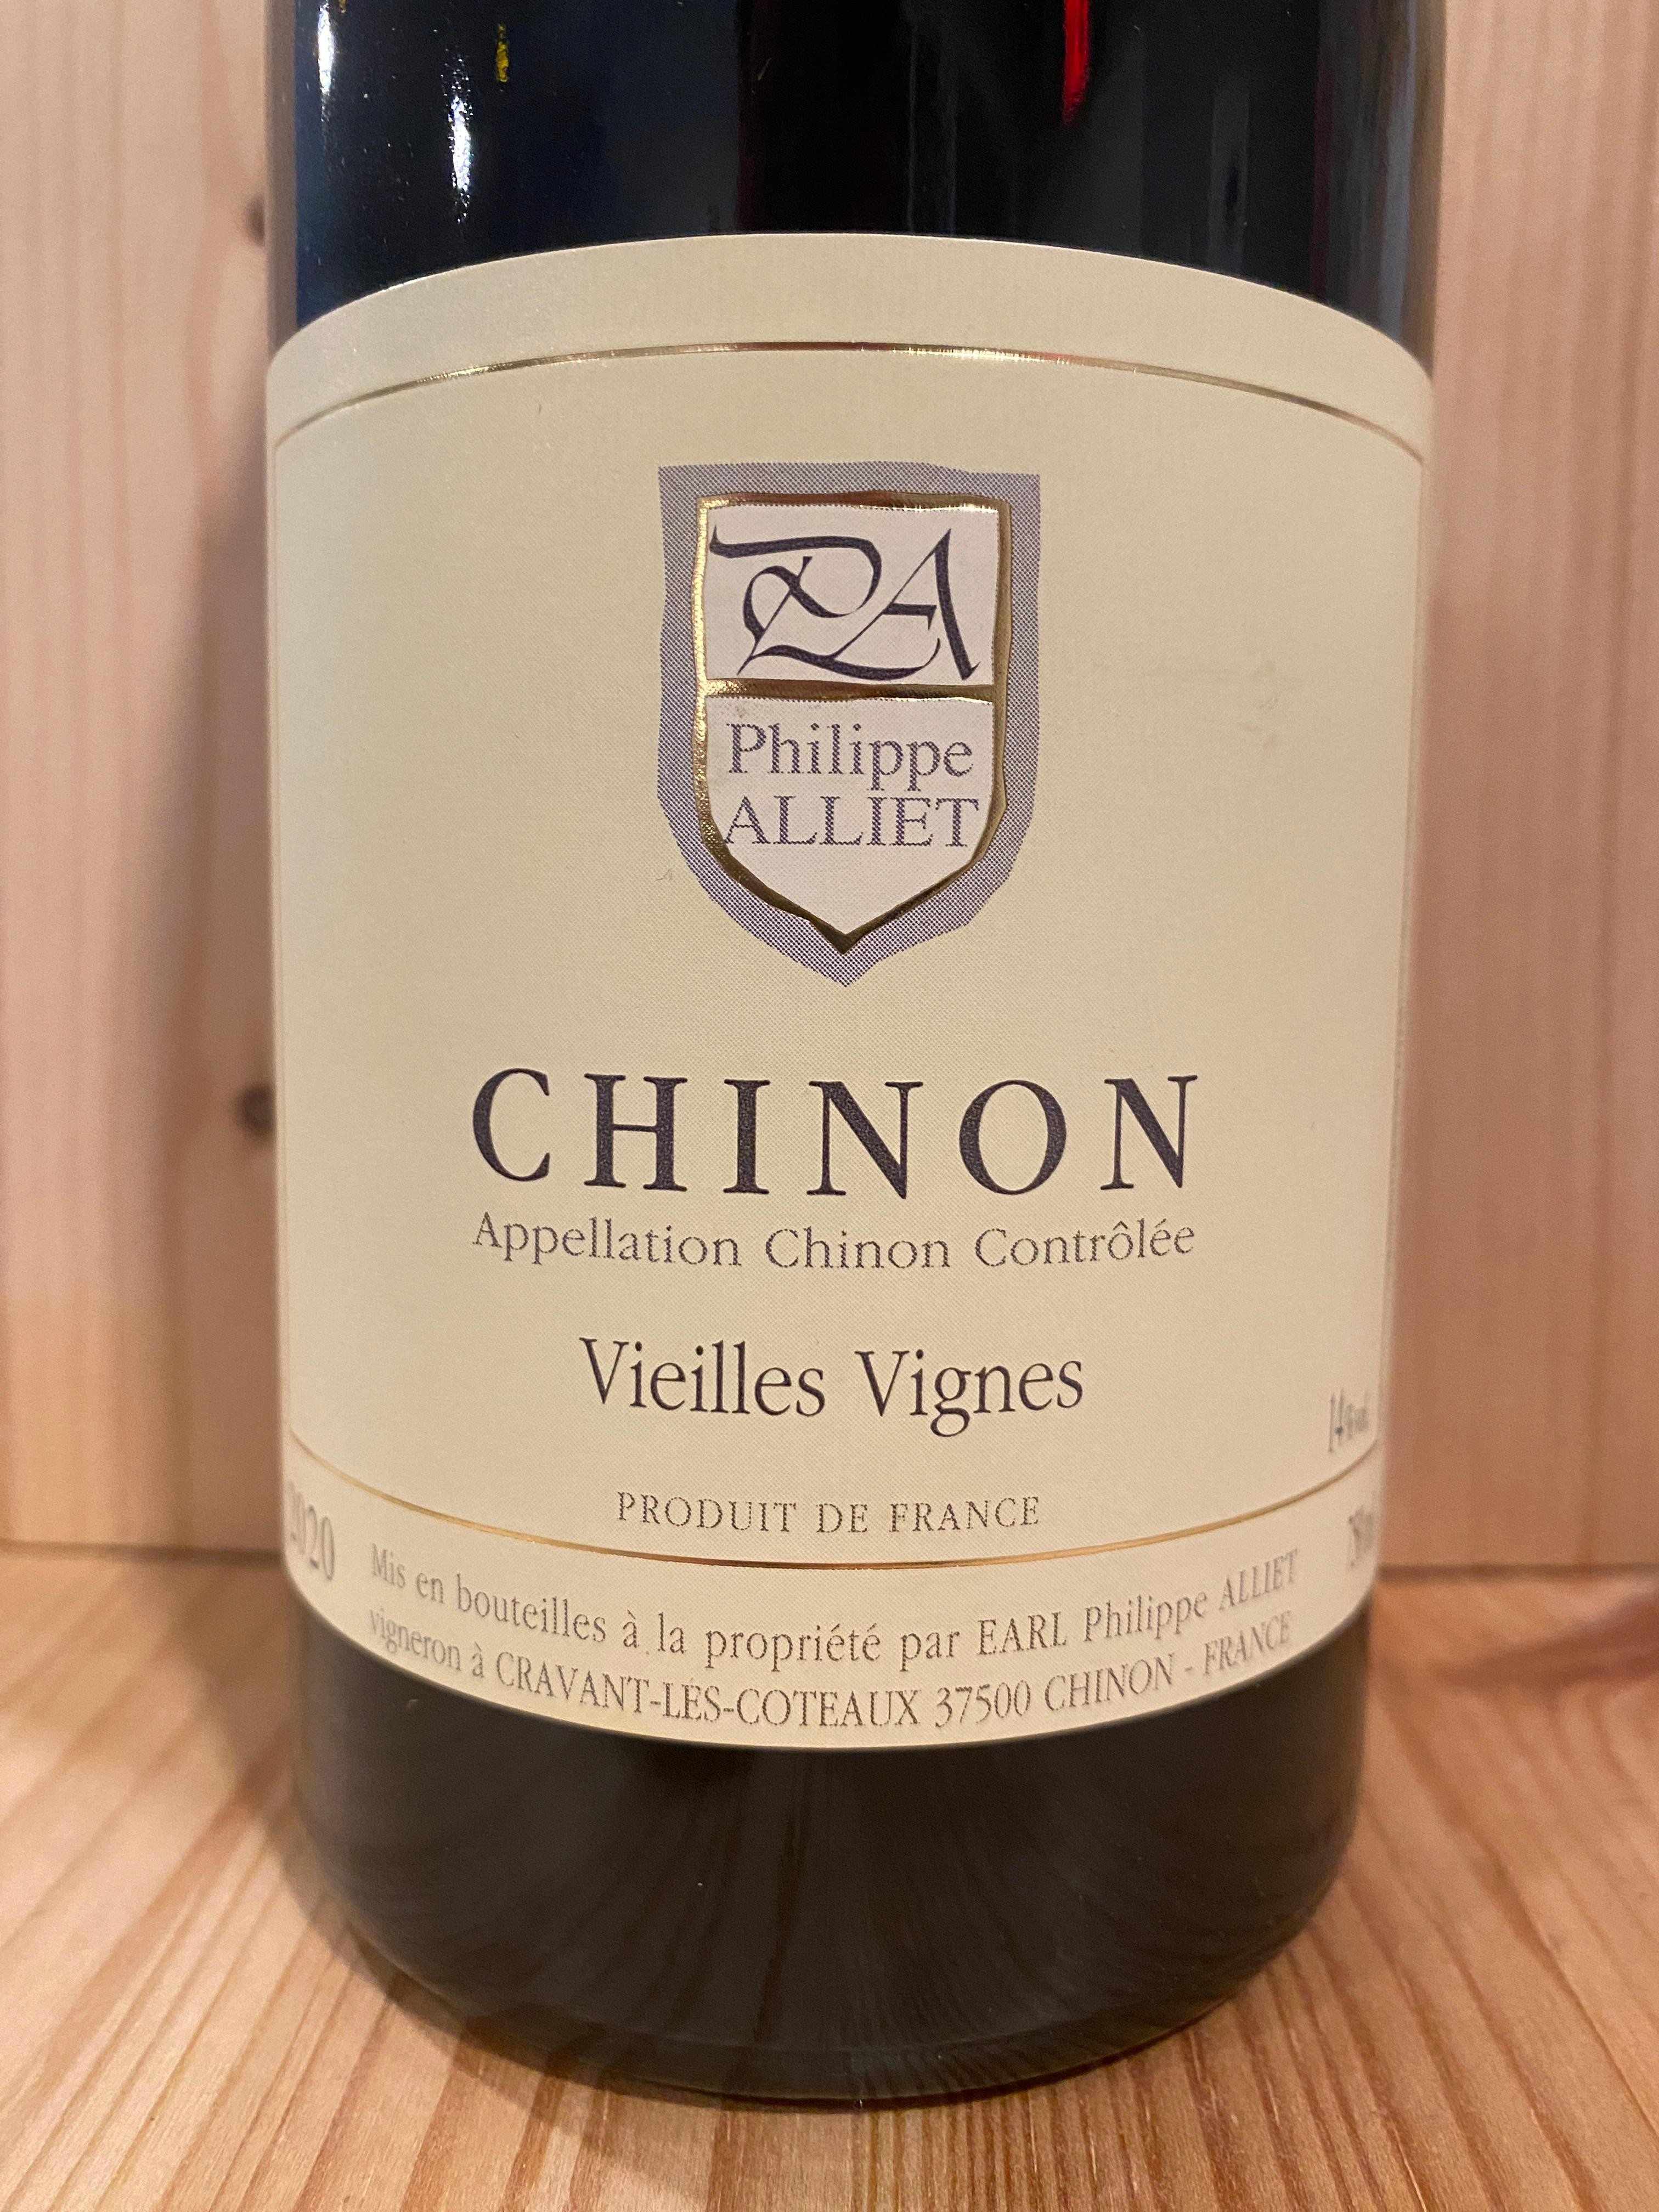 Phillipe Alliet "Vieilles Vignes" Chinon 2020: Loire Valley, France